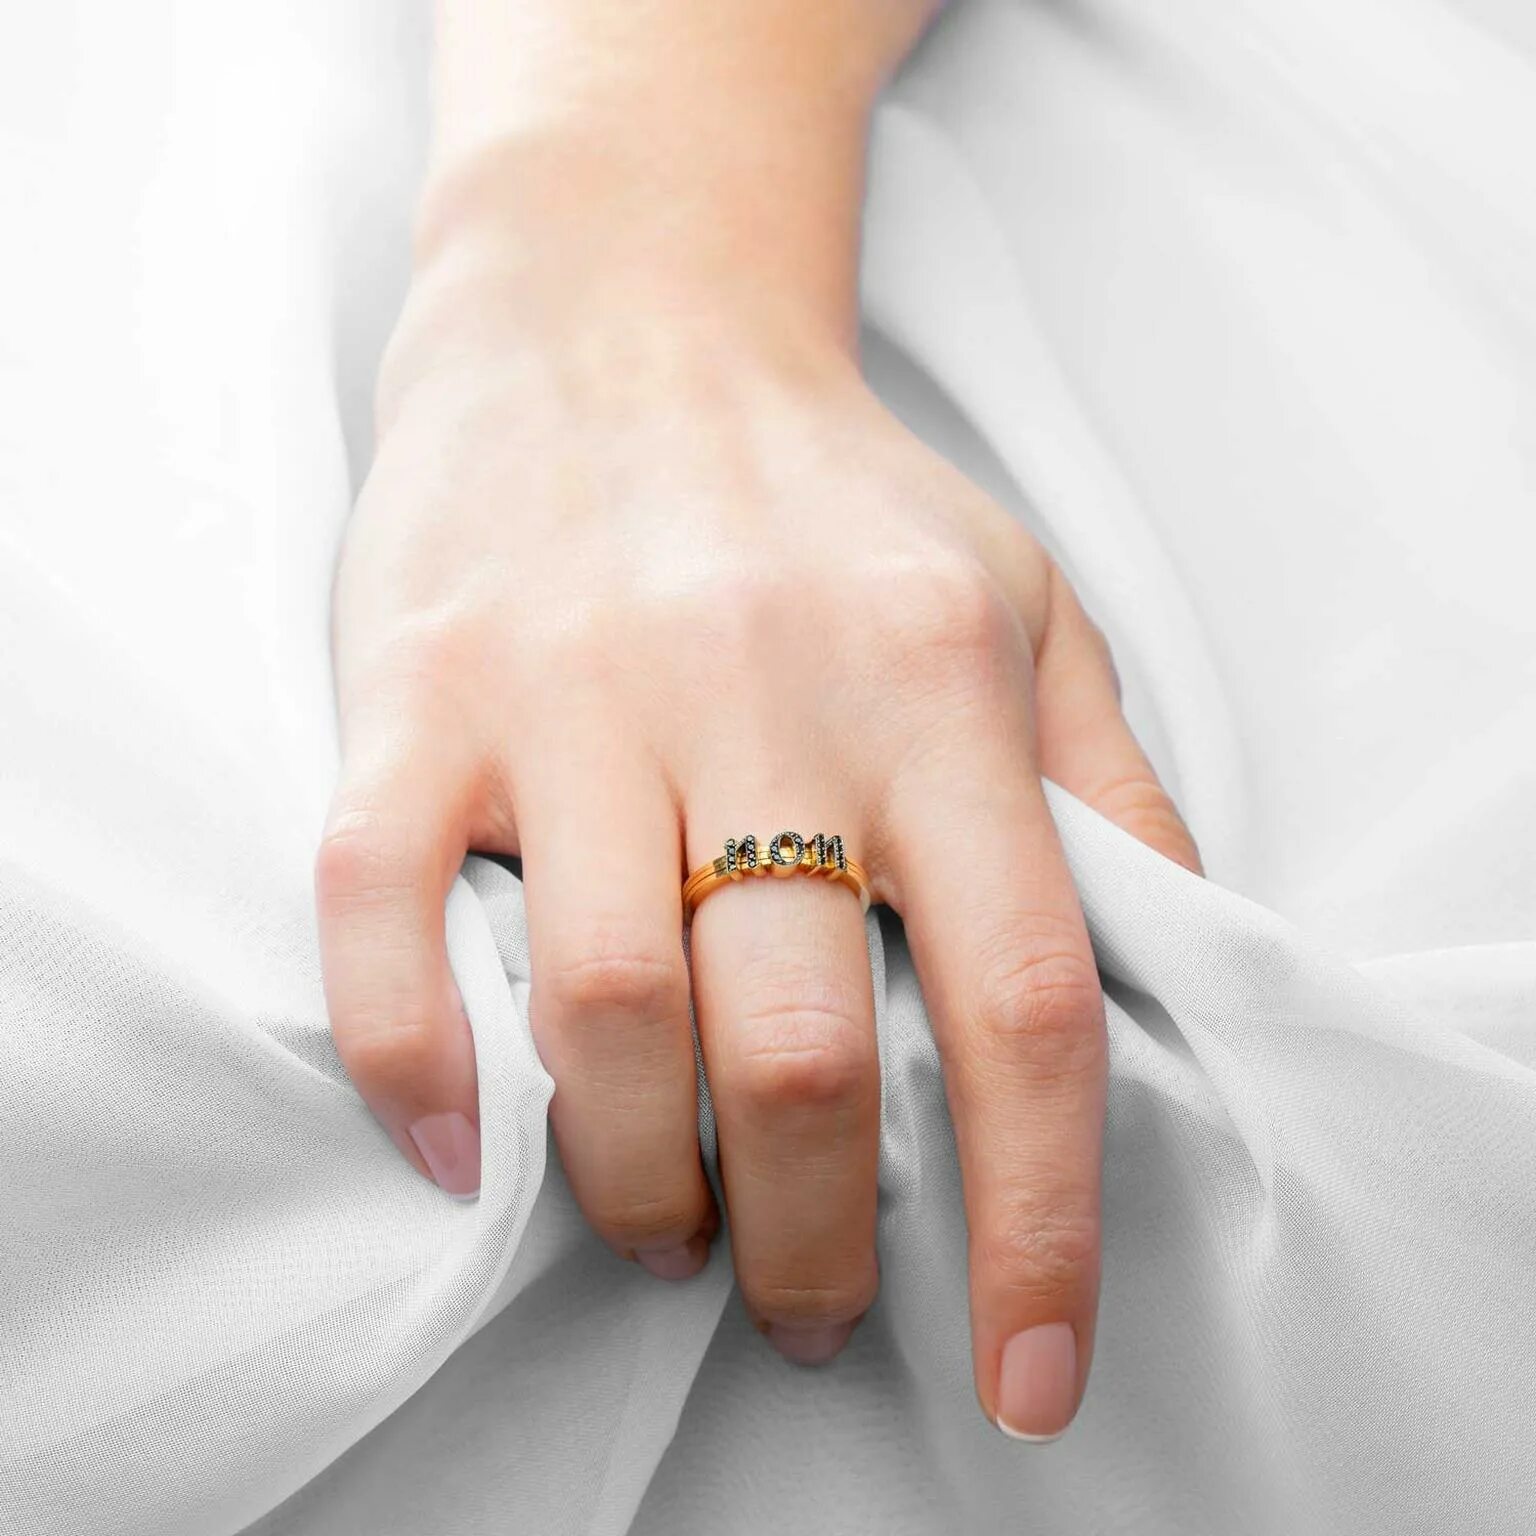 Замужние золотые кольца. Обручальное кольцо на пальце. Свадебные кольца на пальцах. Кольцо для замужества. Обручальные кольца на руках.